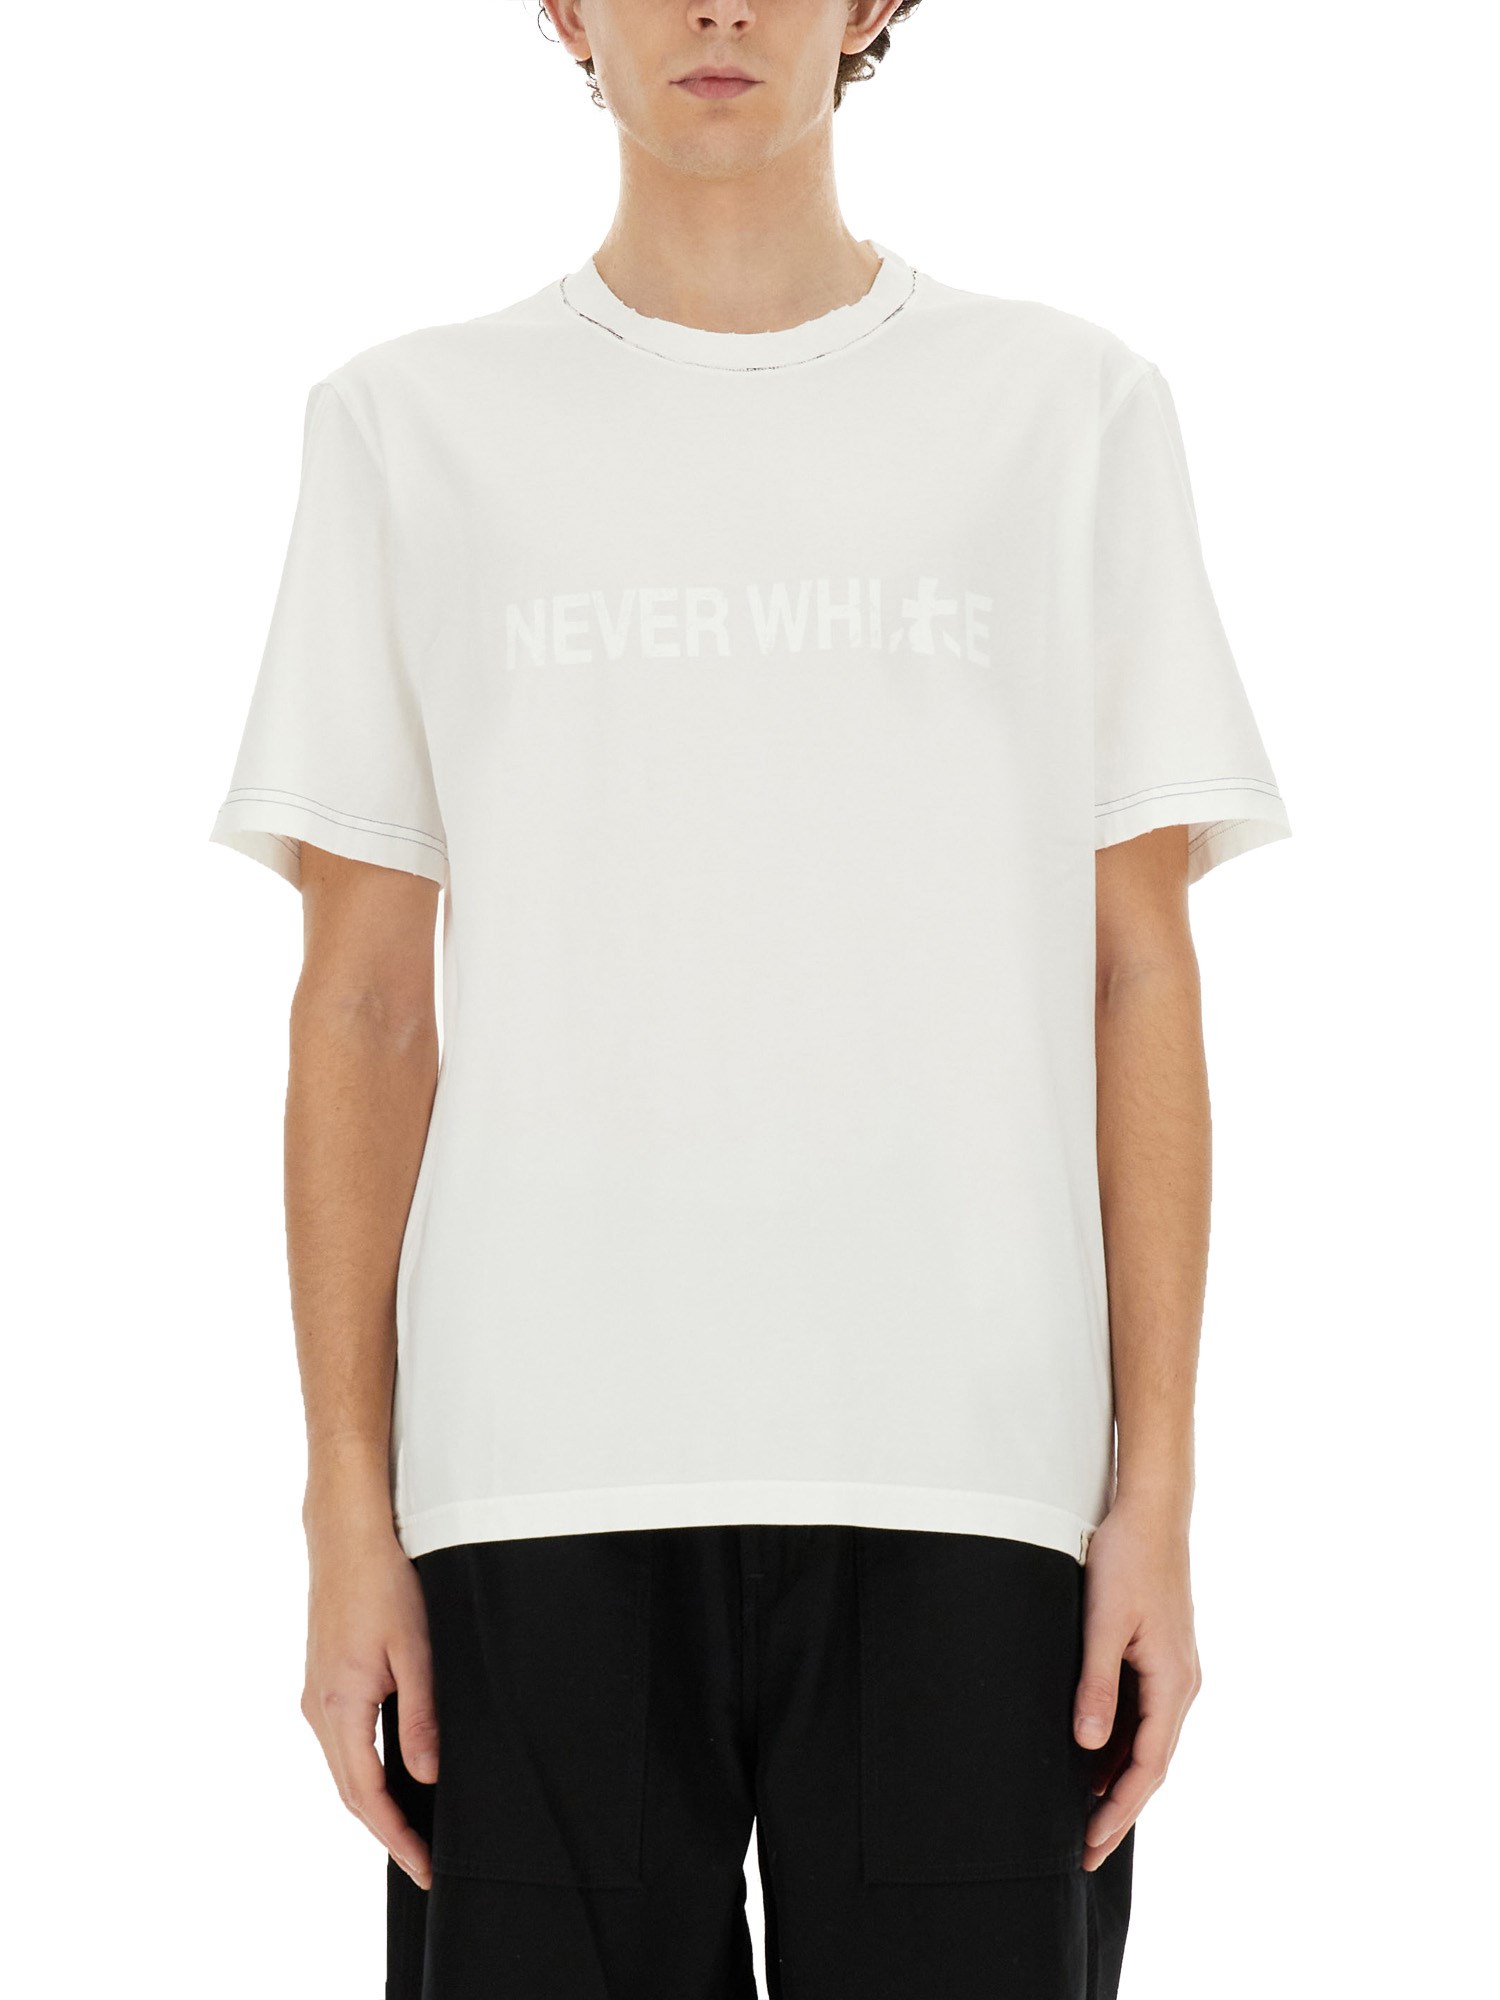 Shop Premiata "never White" T-shirt